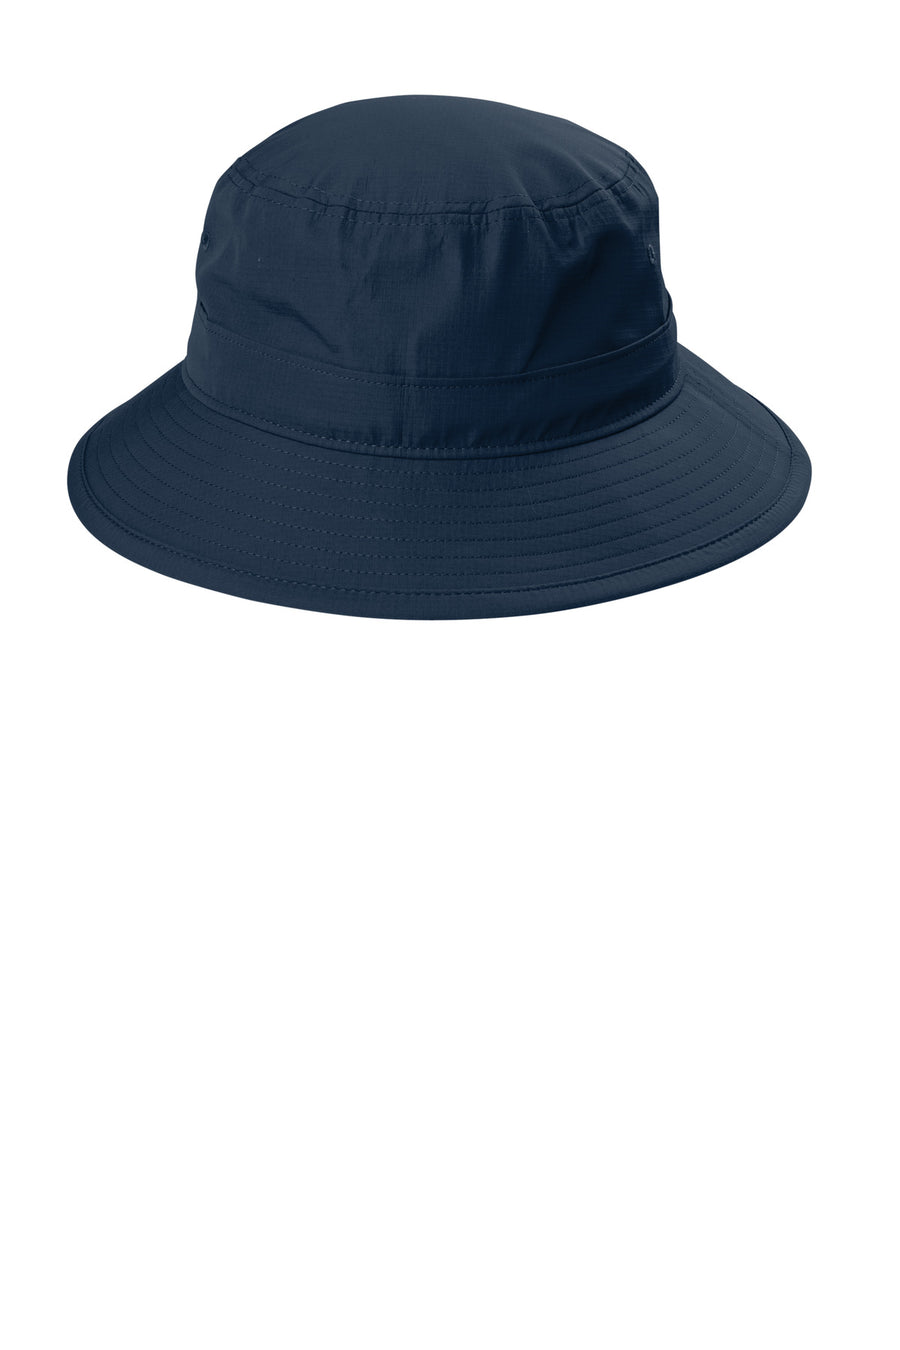 Port Authority¬Æ Outdoor UV Bucket Hat C948